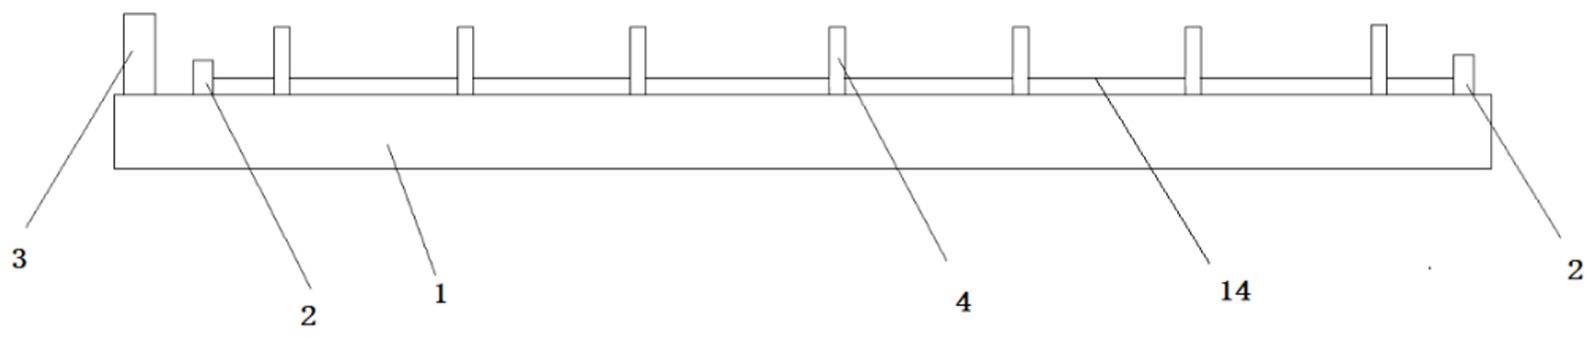 钢卷尺类柔性计量器具检定校准装置平整度调节器的制作方法